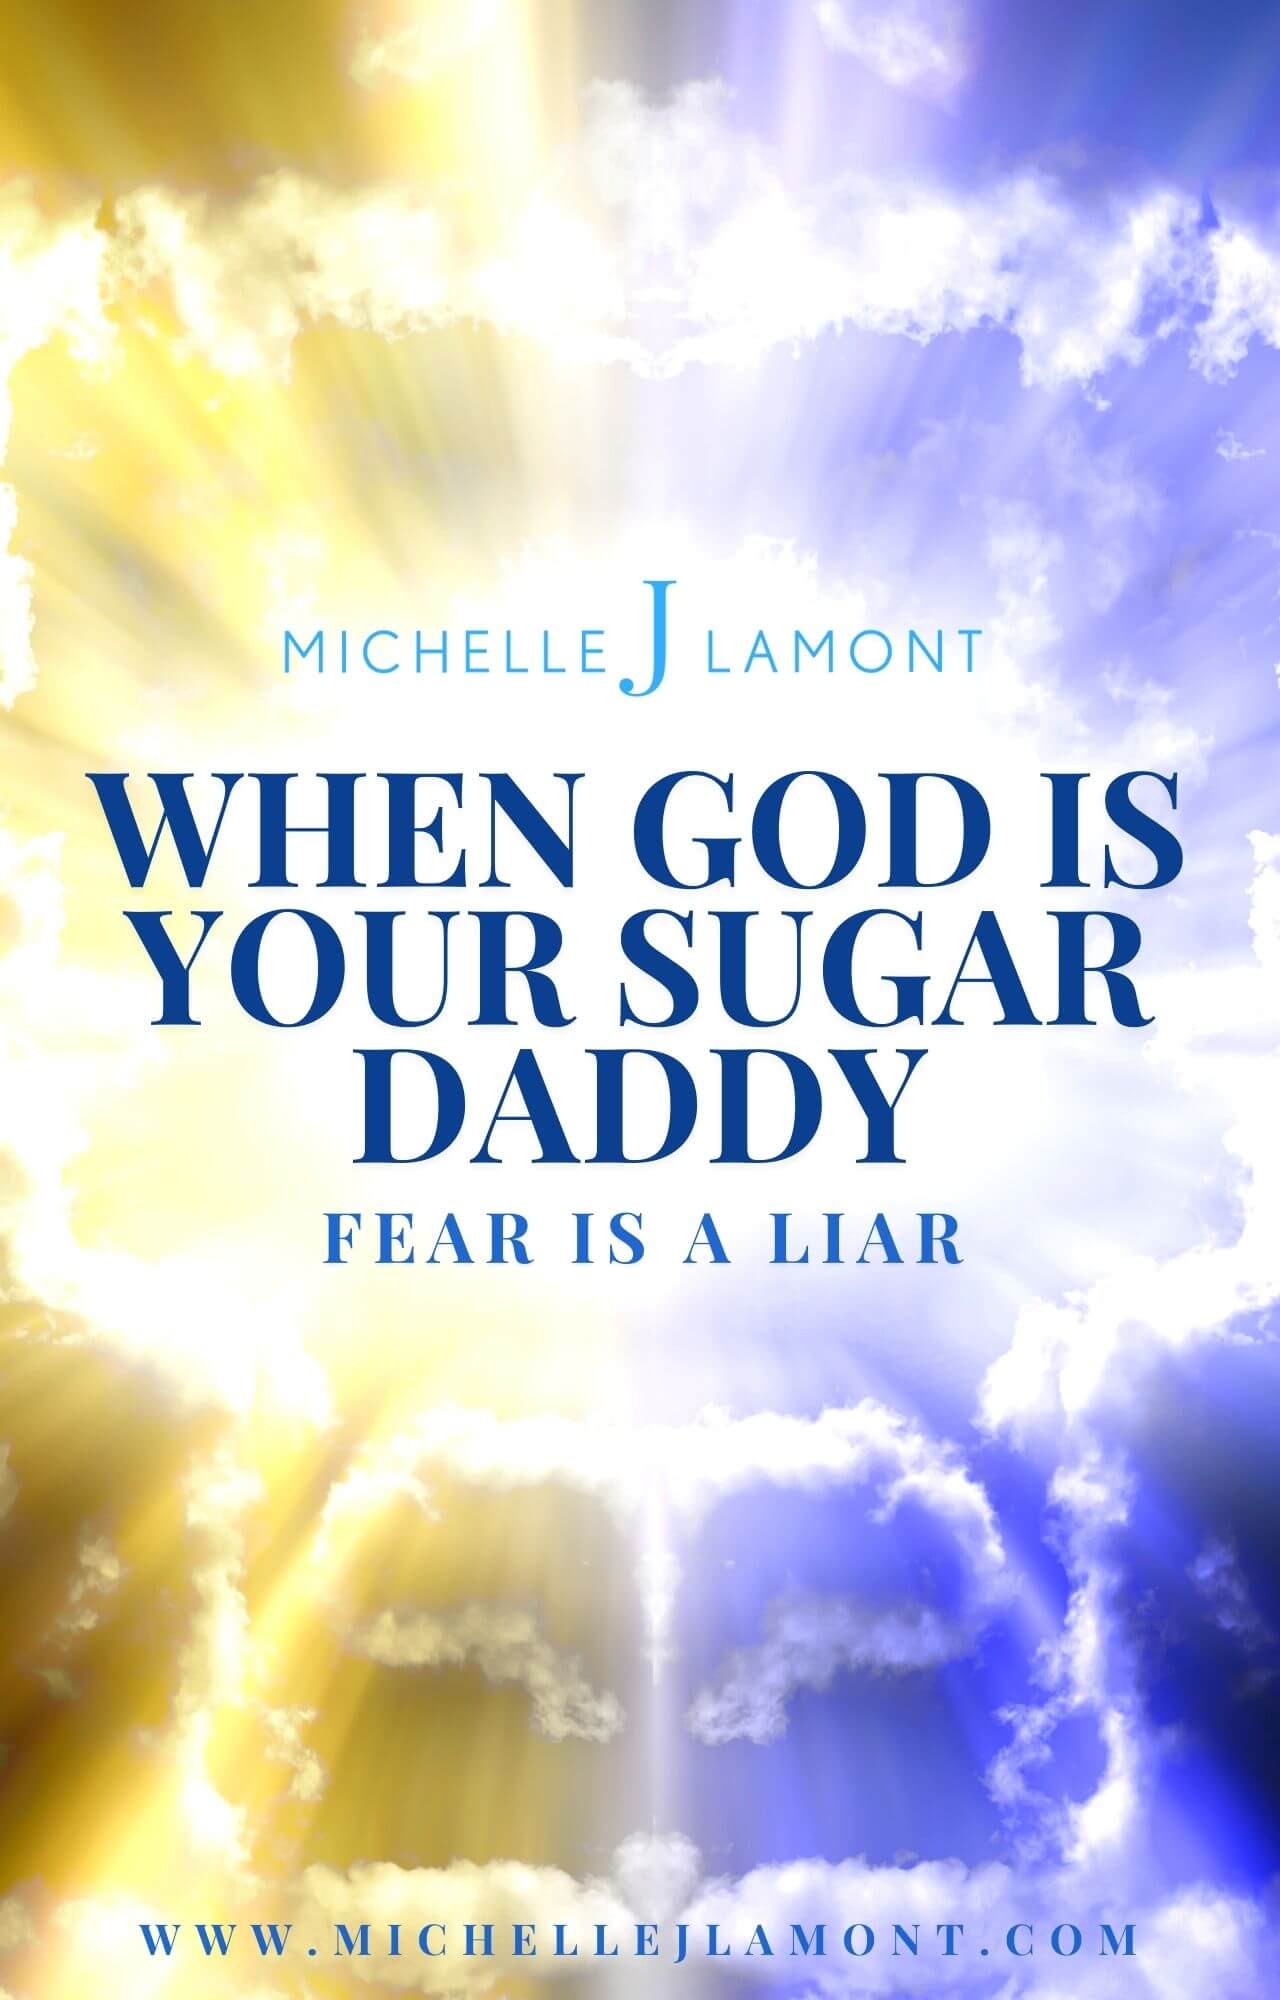 When God is Your Sugar Daddy, Fear is a Liar